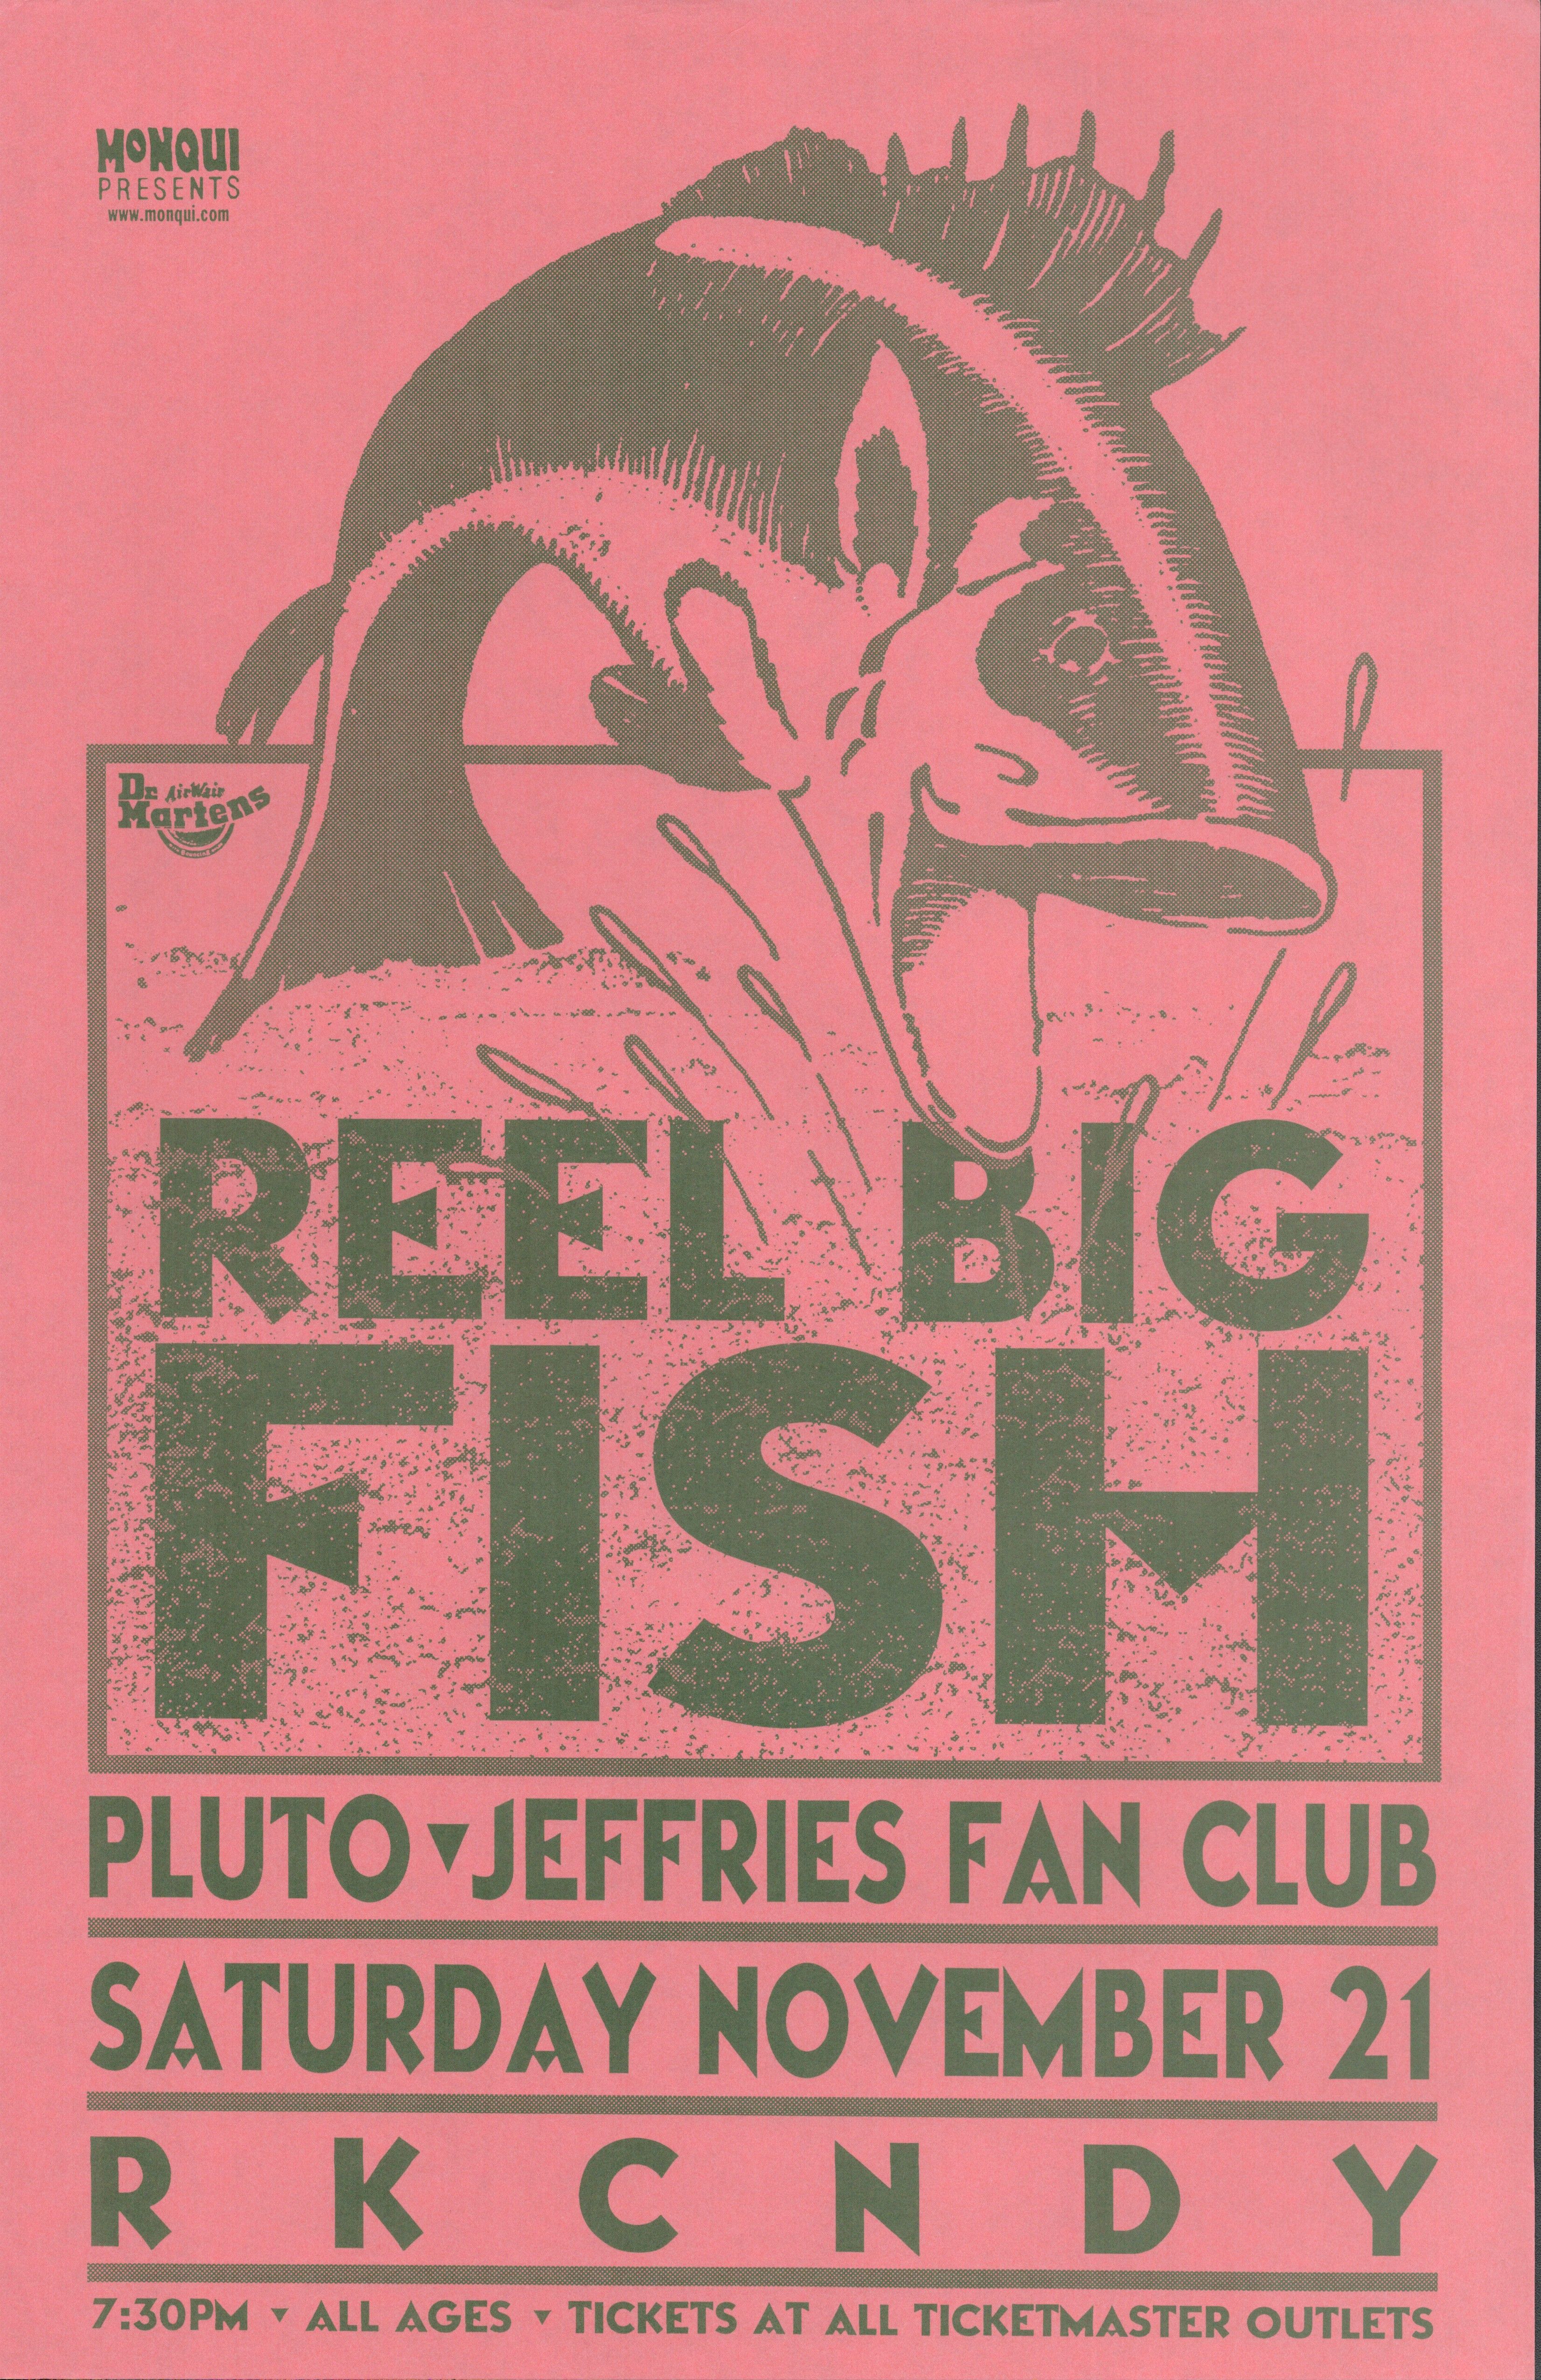 Reel Big Fish Concert Posters Values - GoCollect (reel-big-fish )